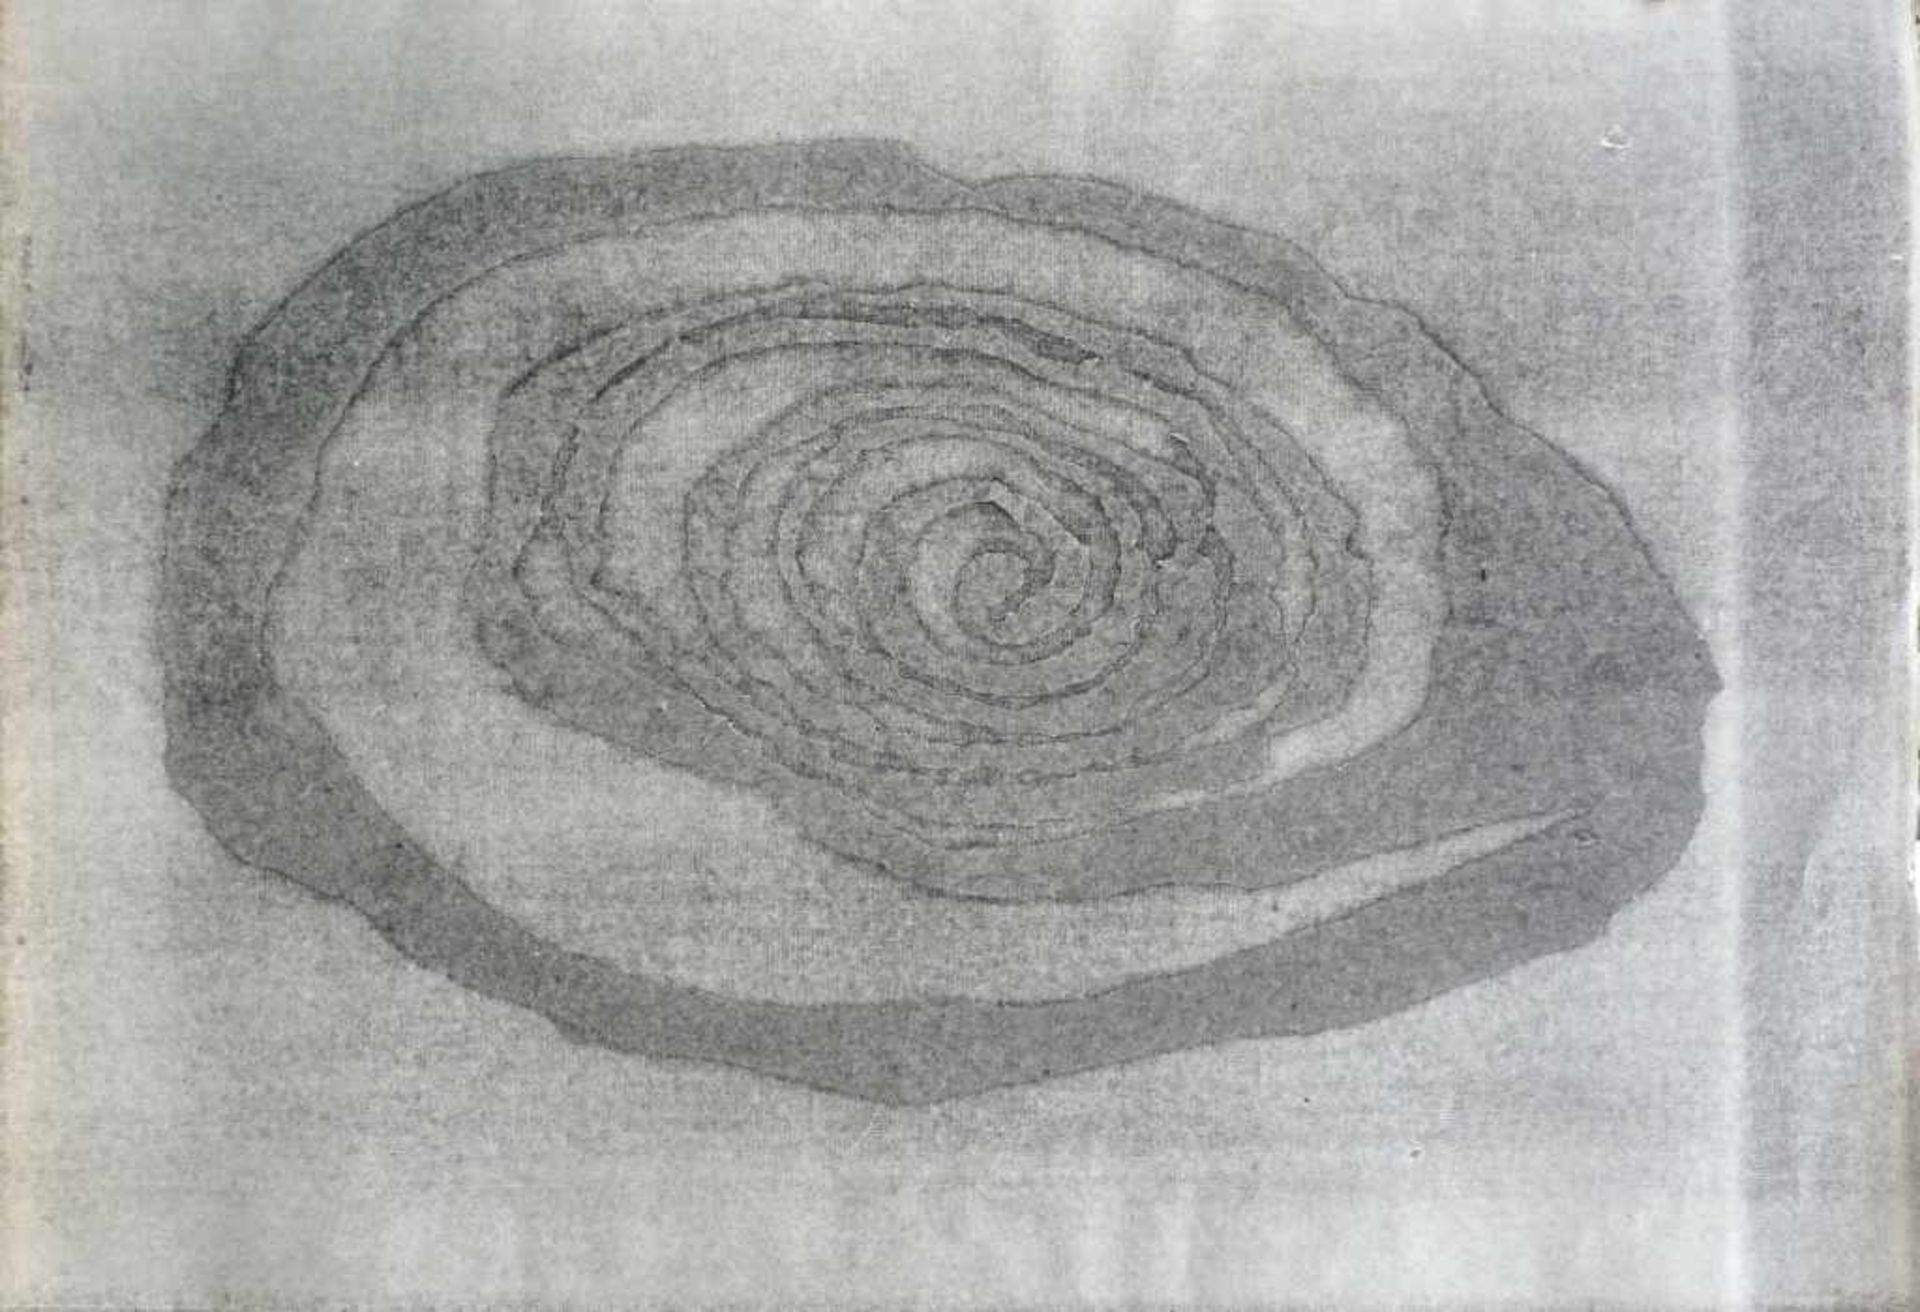 DENNHARDT, KLAUS: "Komposition", 1982Monotypie auf Bütten64,0 x 92,0 cmsigniert und datiert- - -23.